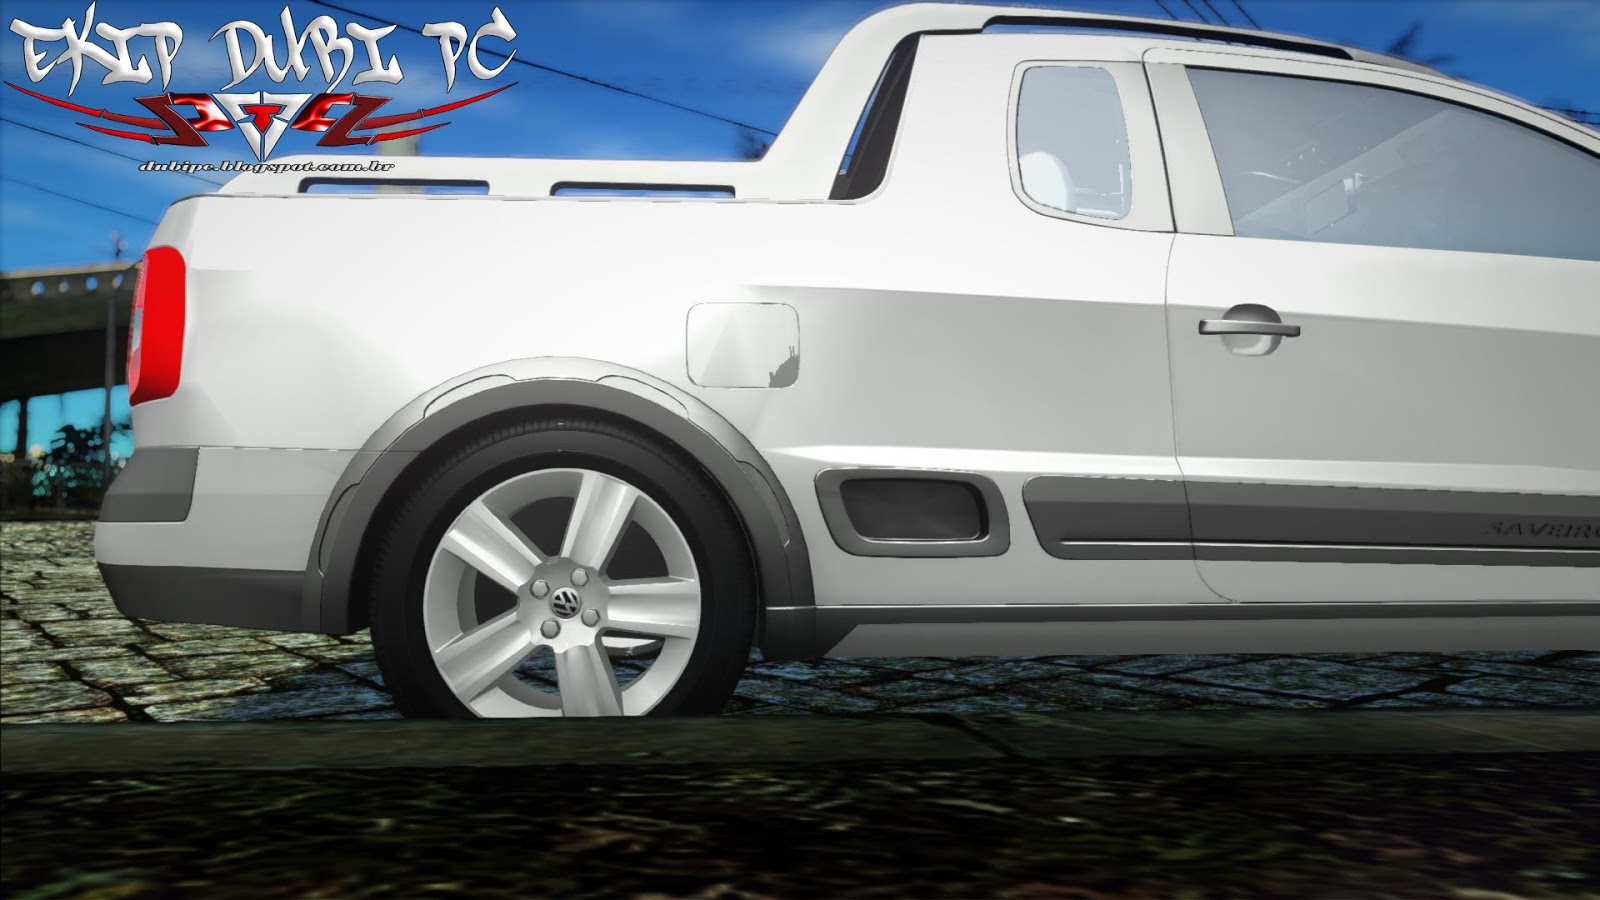 Volkswagen Saveiro G5 Fixa + Som By VINNY-3D ~ Ekip Dubi PC